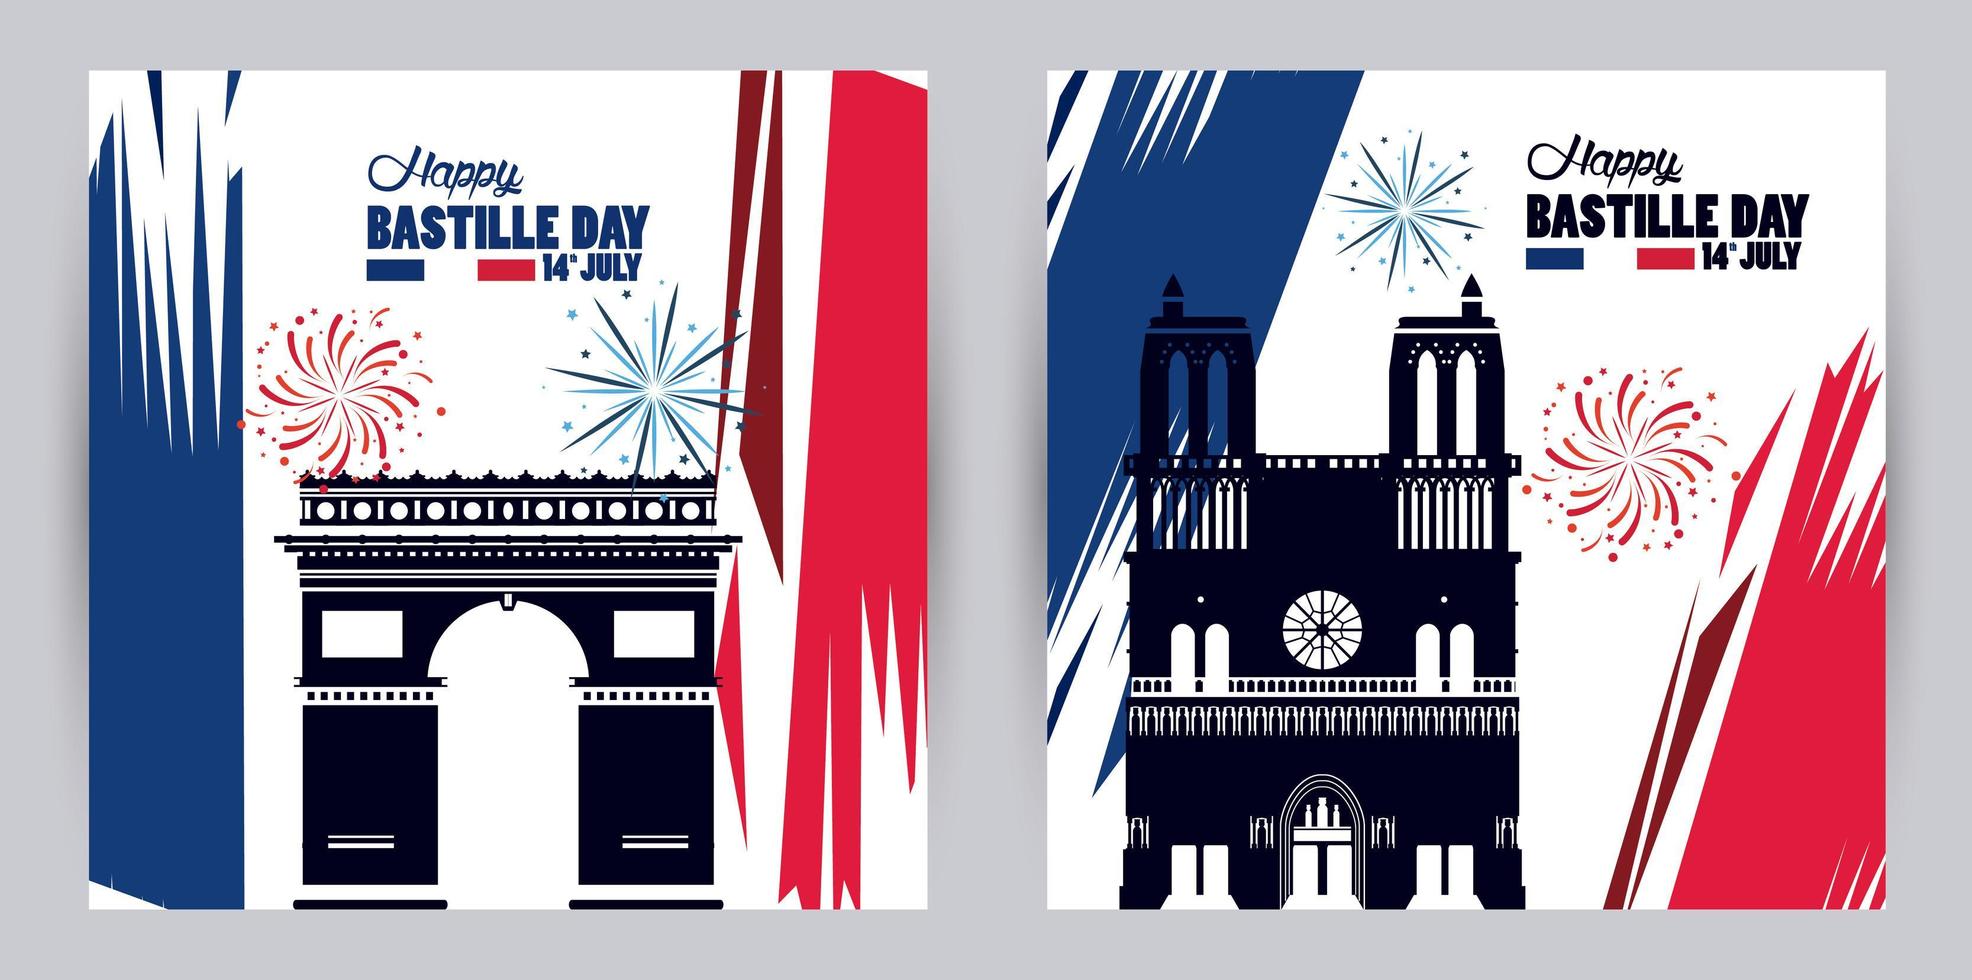 Happy Bastille Day Feier mit Notre Dame Cathedra und Triumphbogen vektor